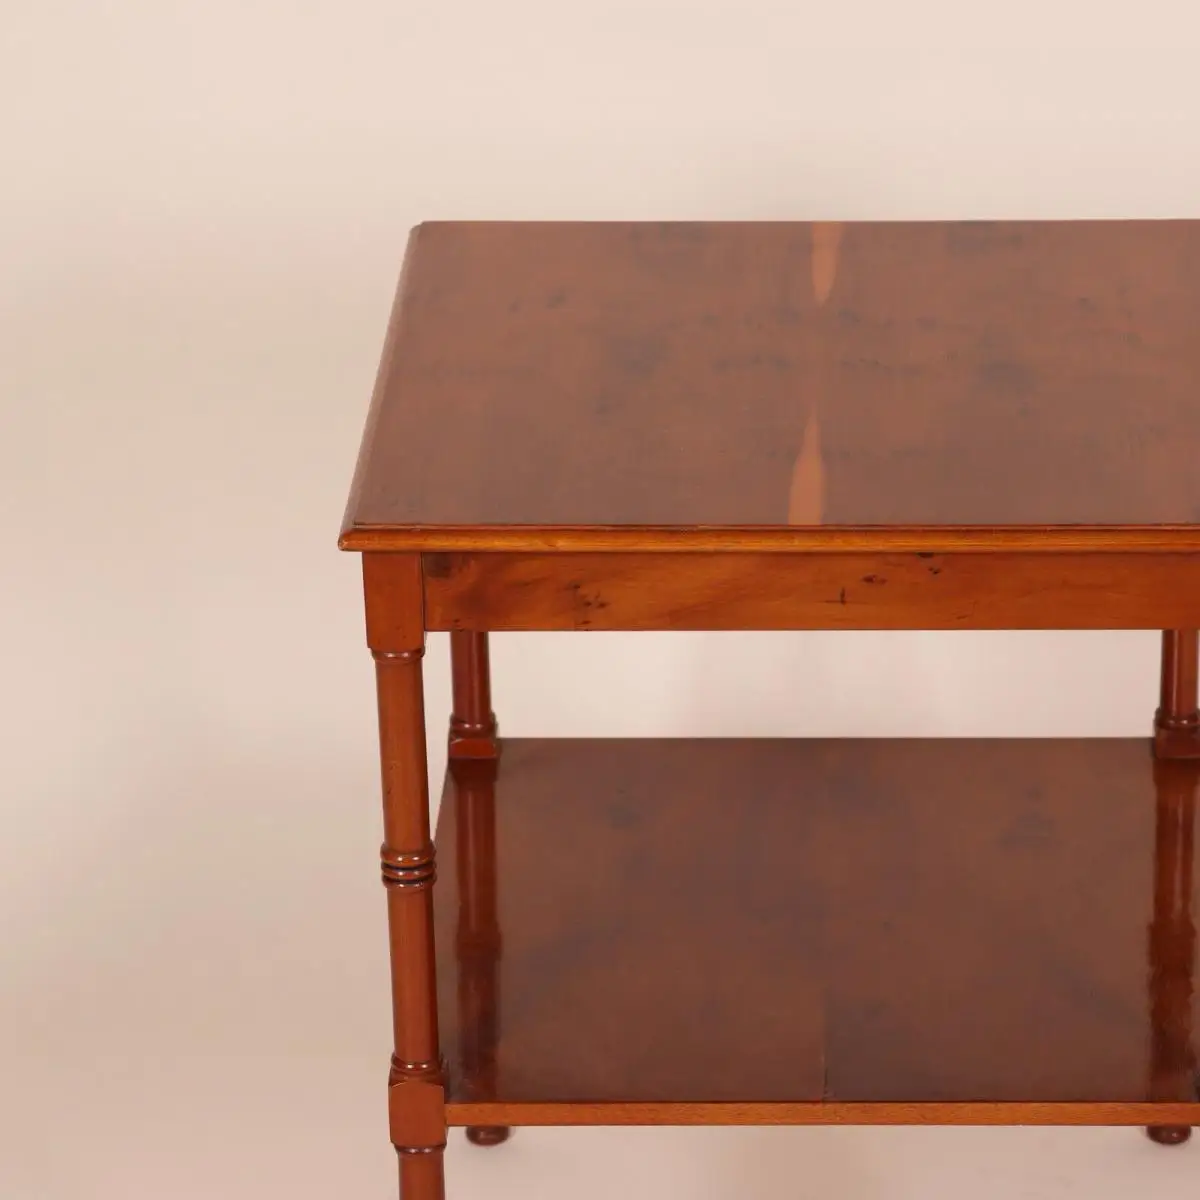 Englische Möbel Original Stilmöbel Heldense Eibe Tisch Beistelltisch Lampentisch 3